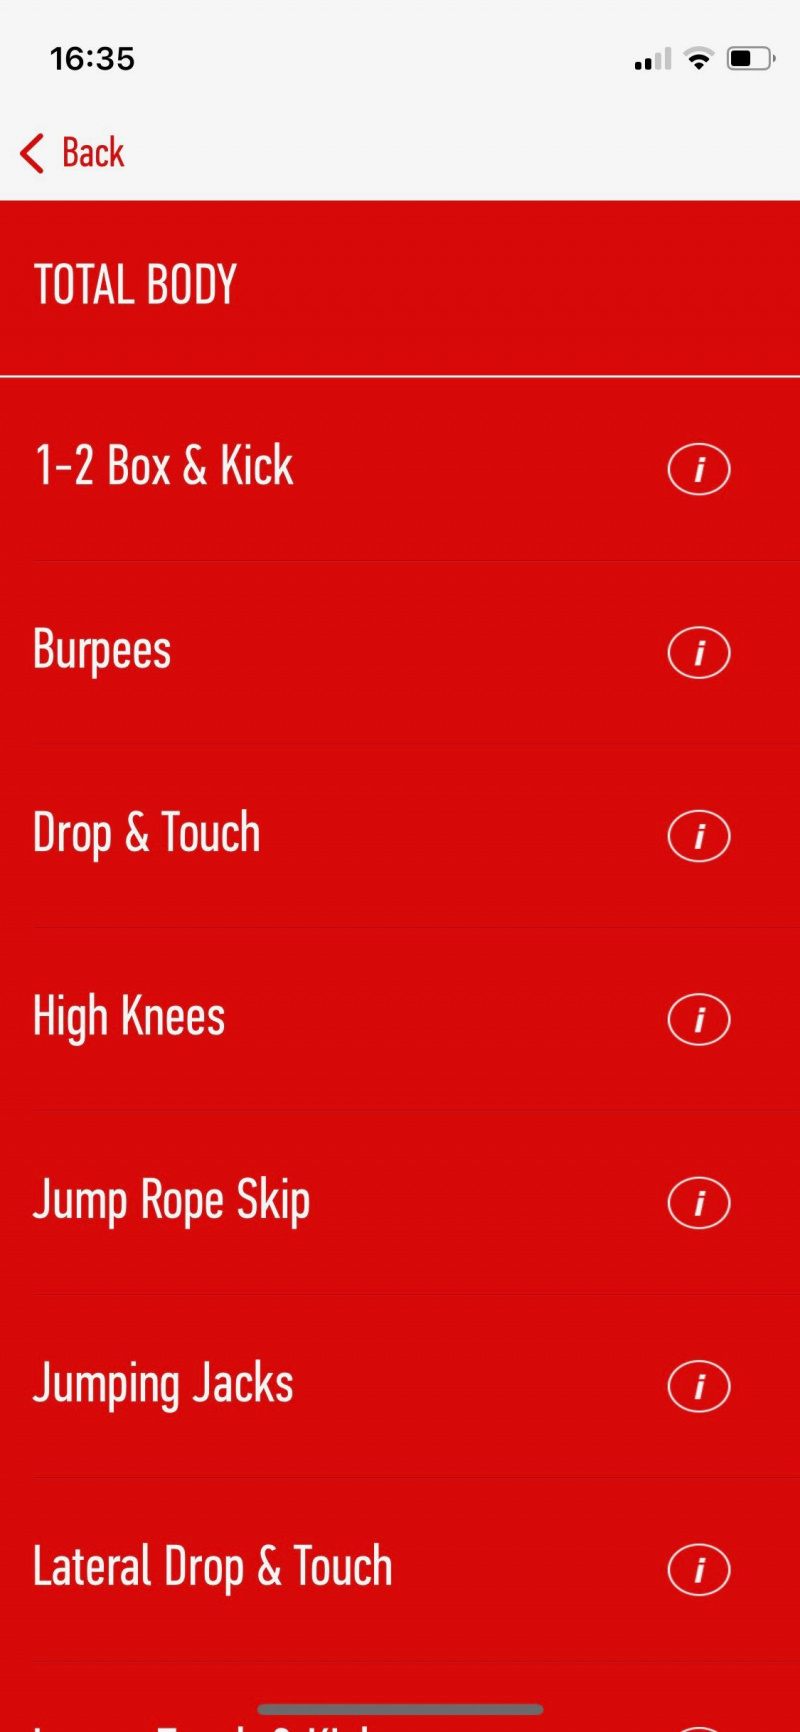   Snimka zaslona 7-minutne aplikacije J&J koja prikazuje primjer rutine vježbanja